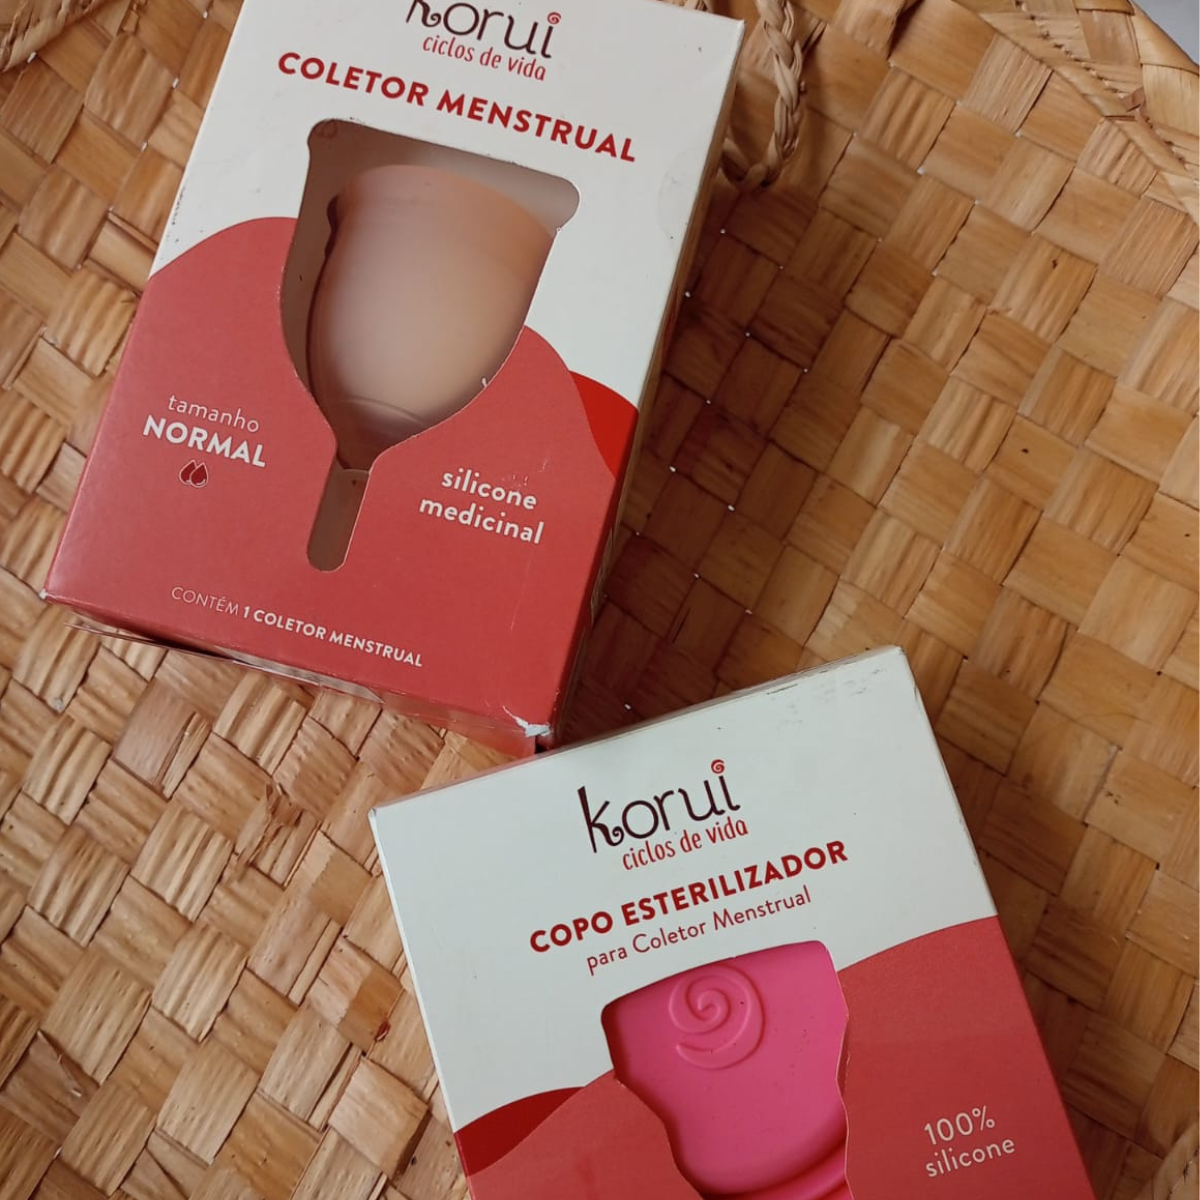 Menstruação com cheiro forte: o que pode ser? – Korui